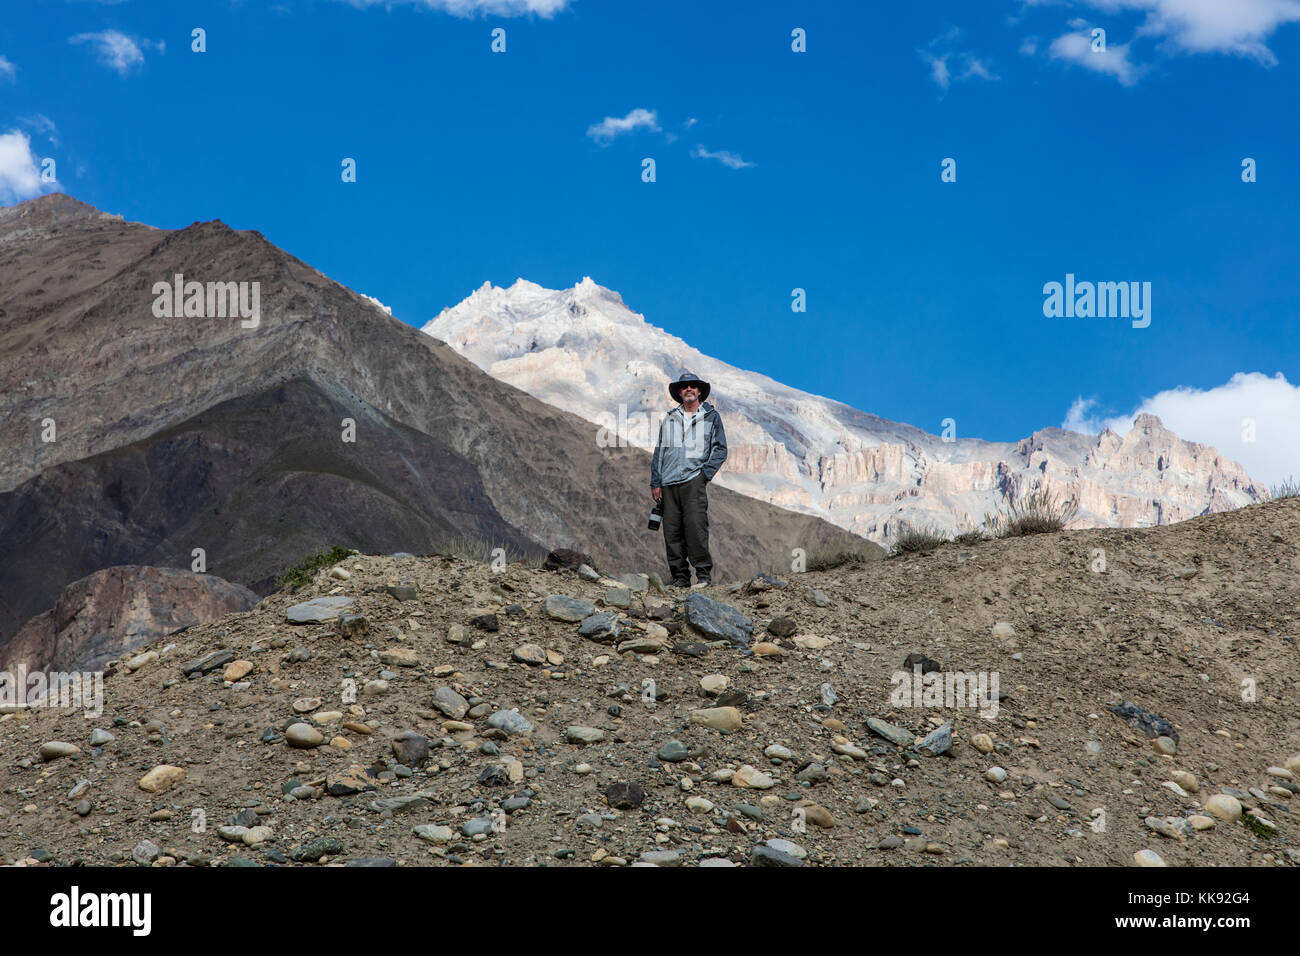 Todd Lovell stand on a ridge in the ZANSKAR RIVER GORGE  - ZANSKAR, LADAKH, INDIA Stock Photo